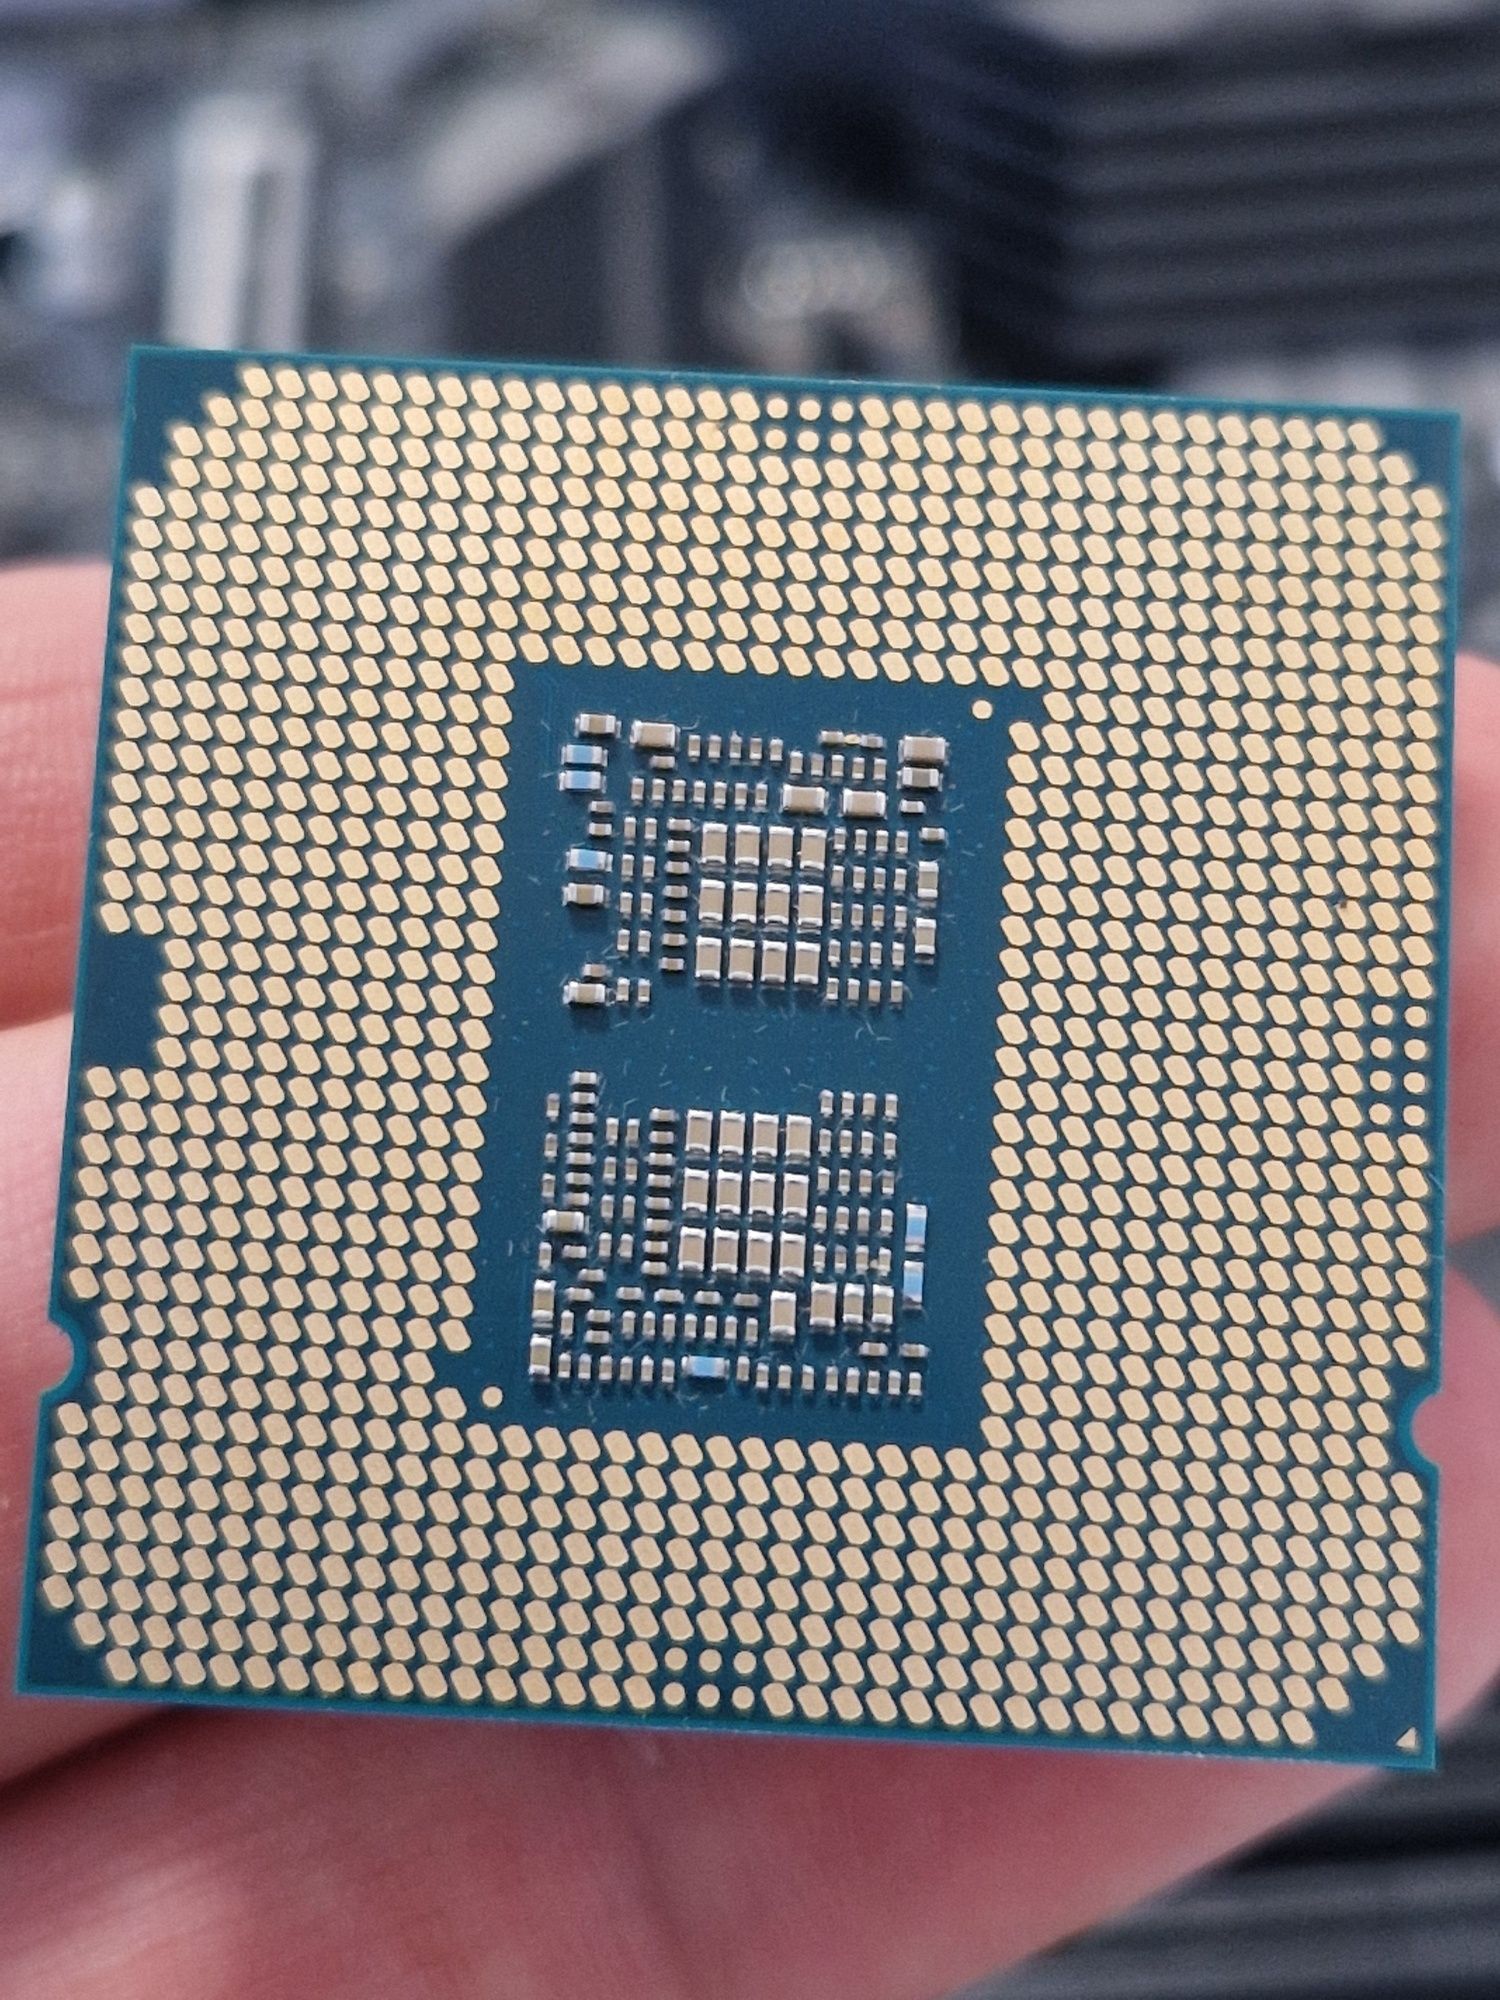 Procesor Intel core i5 10600k płyta główna msi Z490 tomahawk